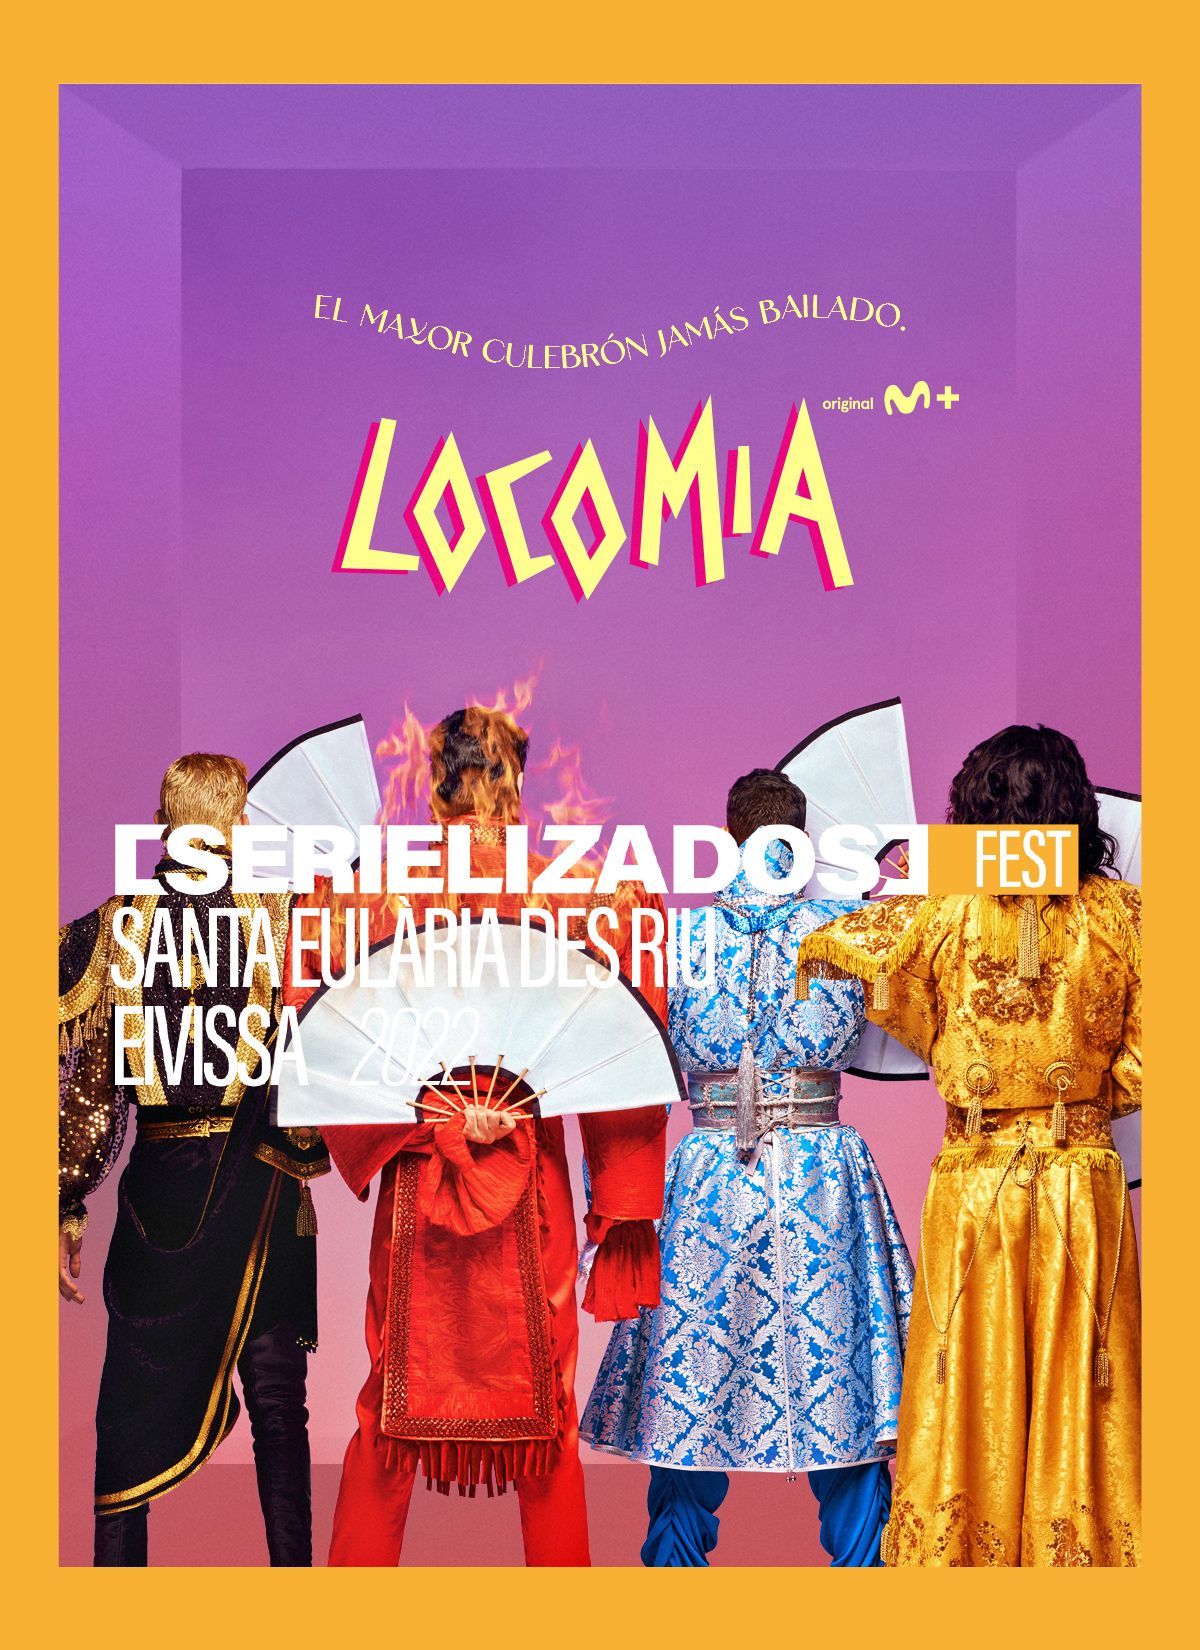 El estreno mundial de la serie ‘Locomía’ (Movistar+) inaugura el Serielizados Fest Santa Eulària des Riu